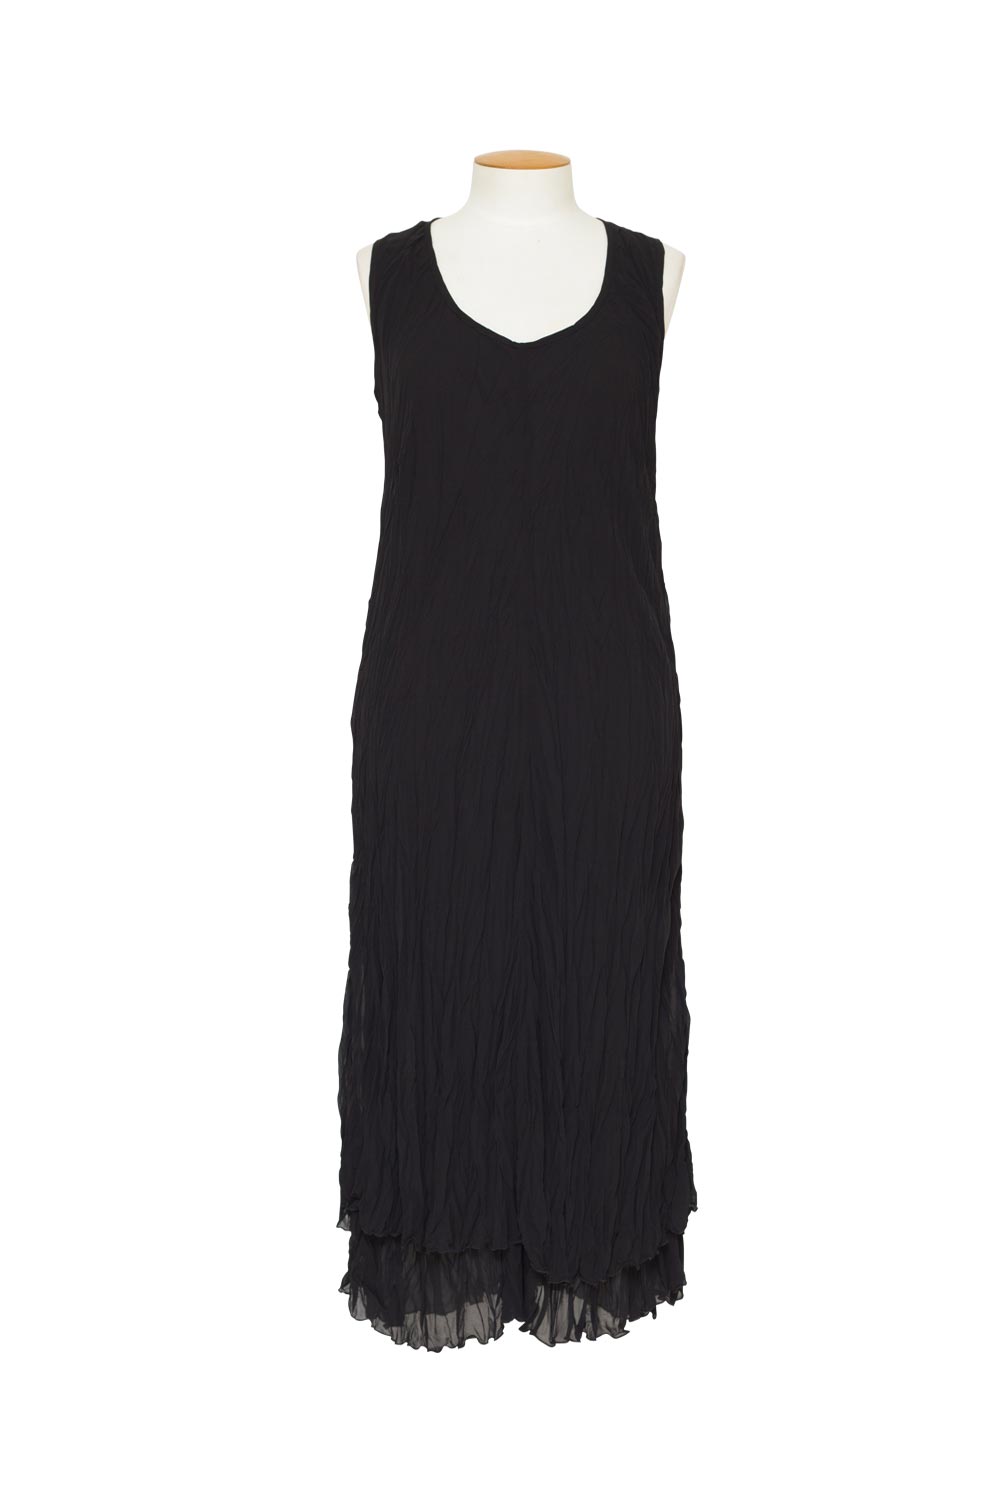 Soft Surroundings Black Chiffon Layered Dress Sleeveless Size XL